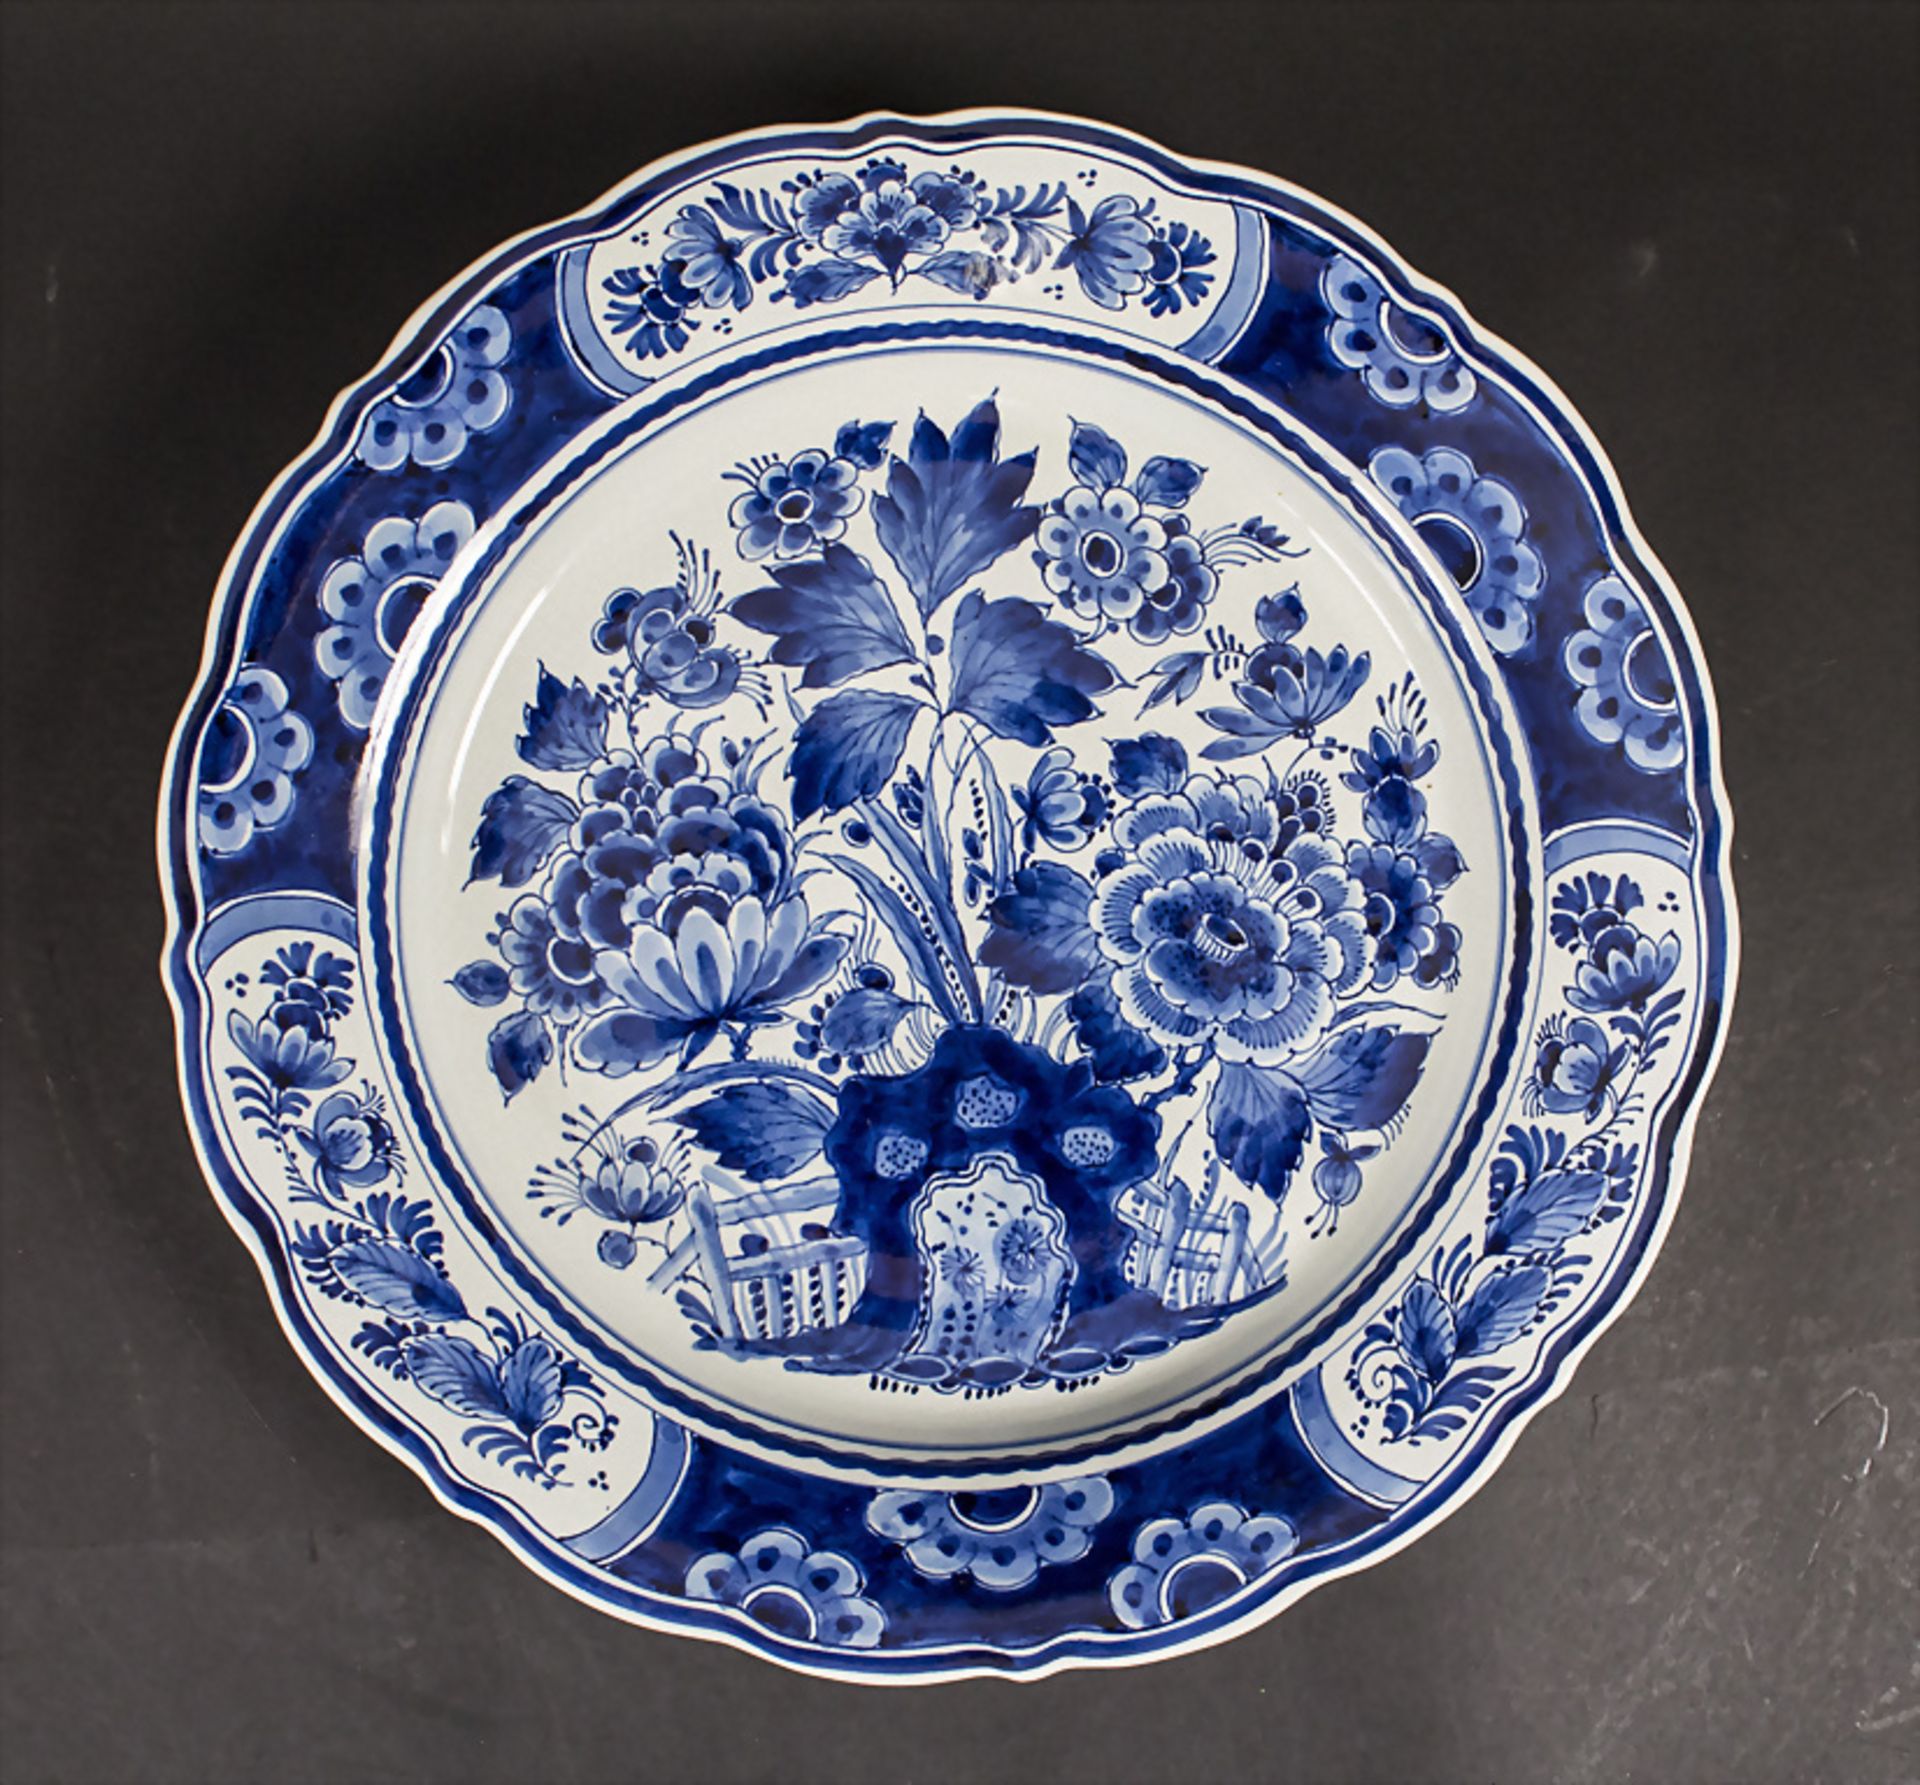 Großer Teller / A large ceramic plate, De Porceleyne Fles, Delft, 20. Jh.